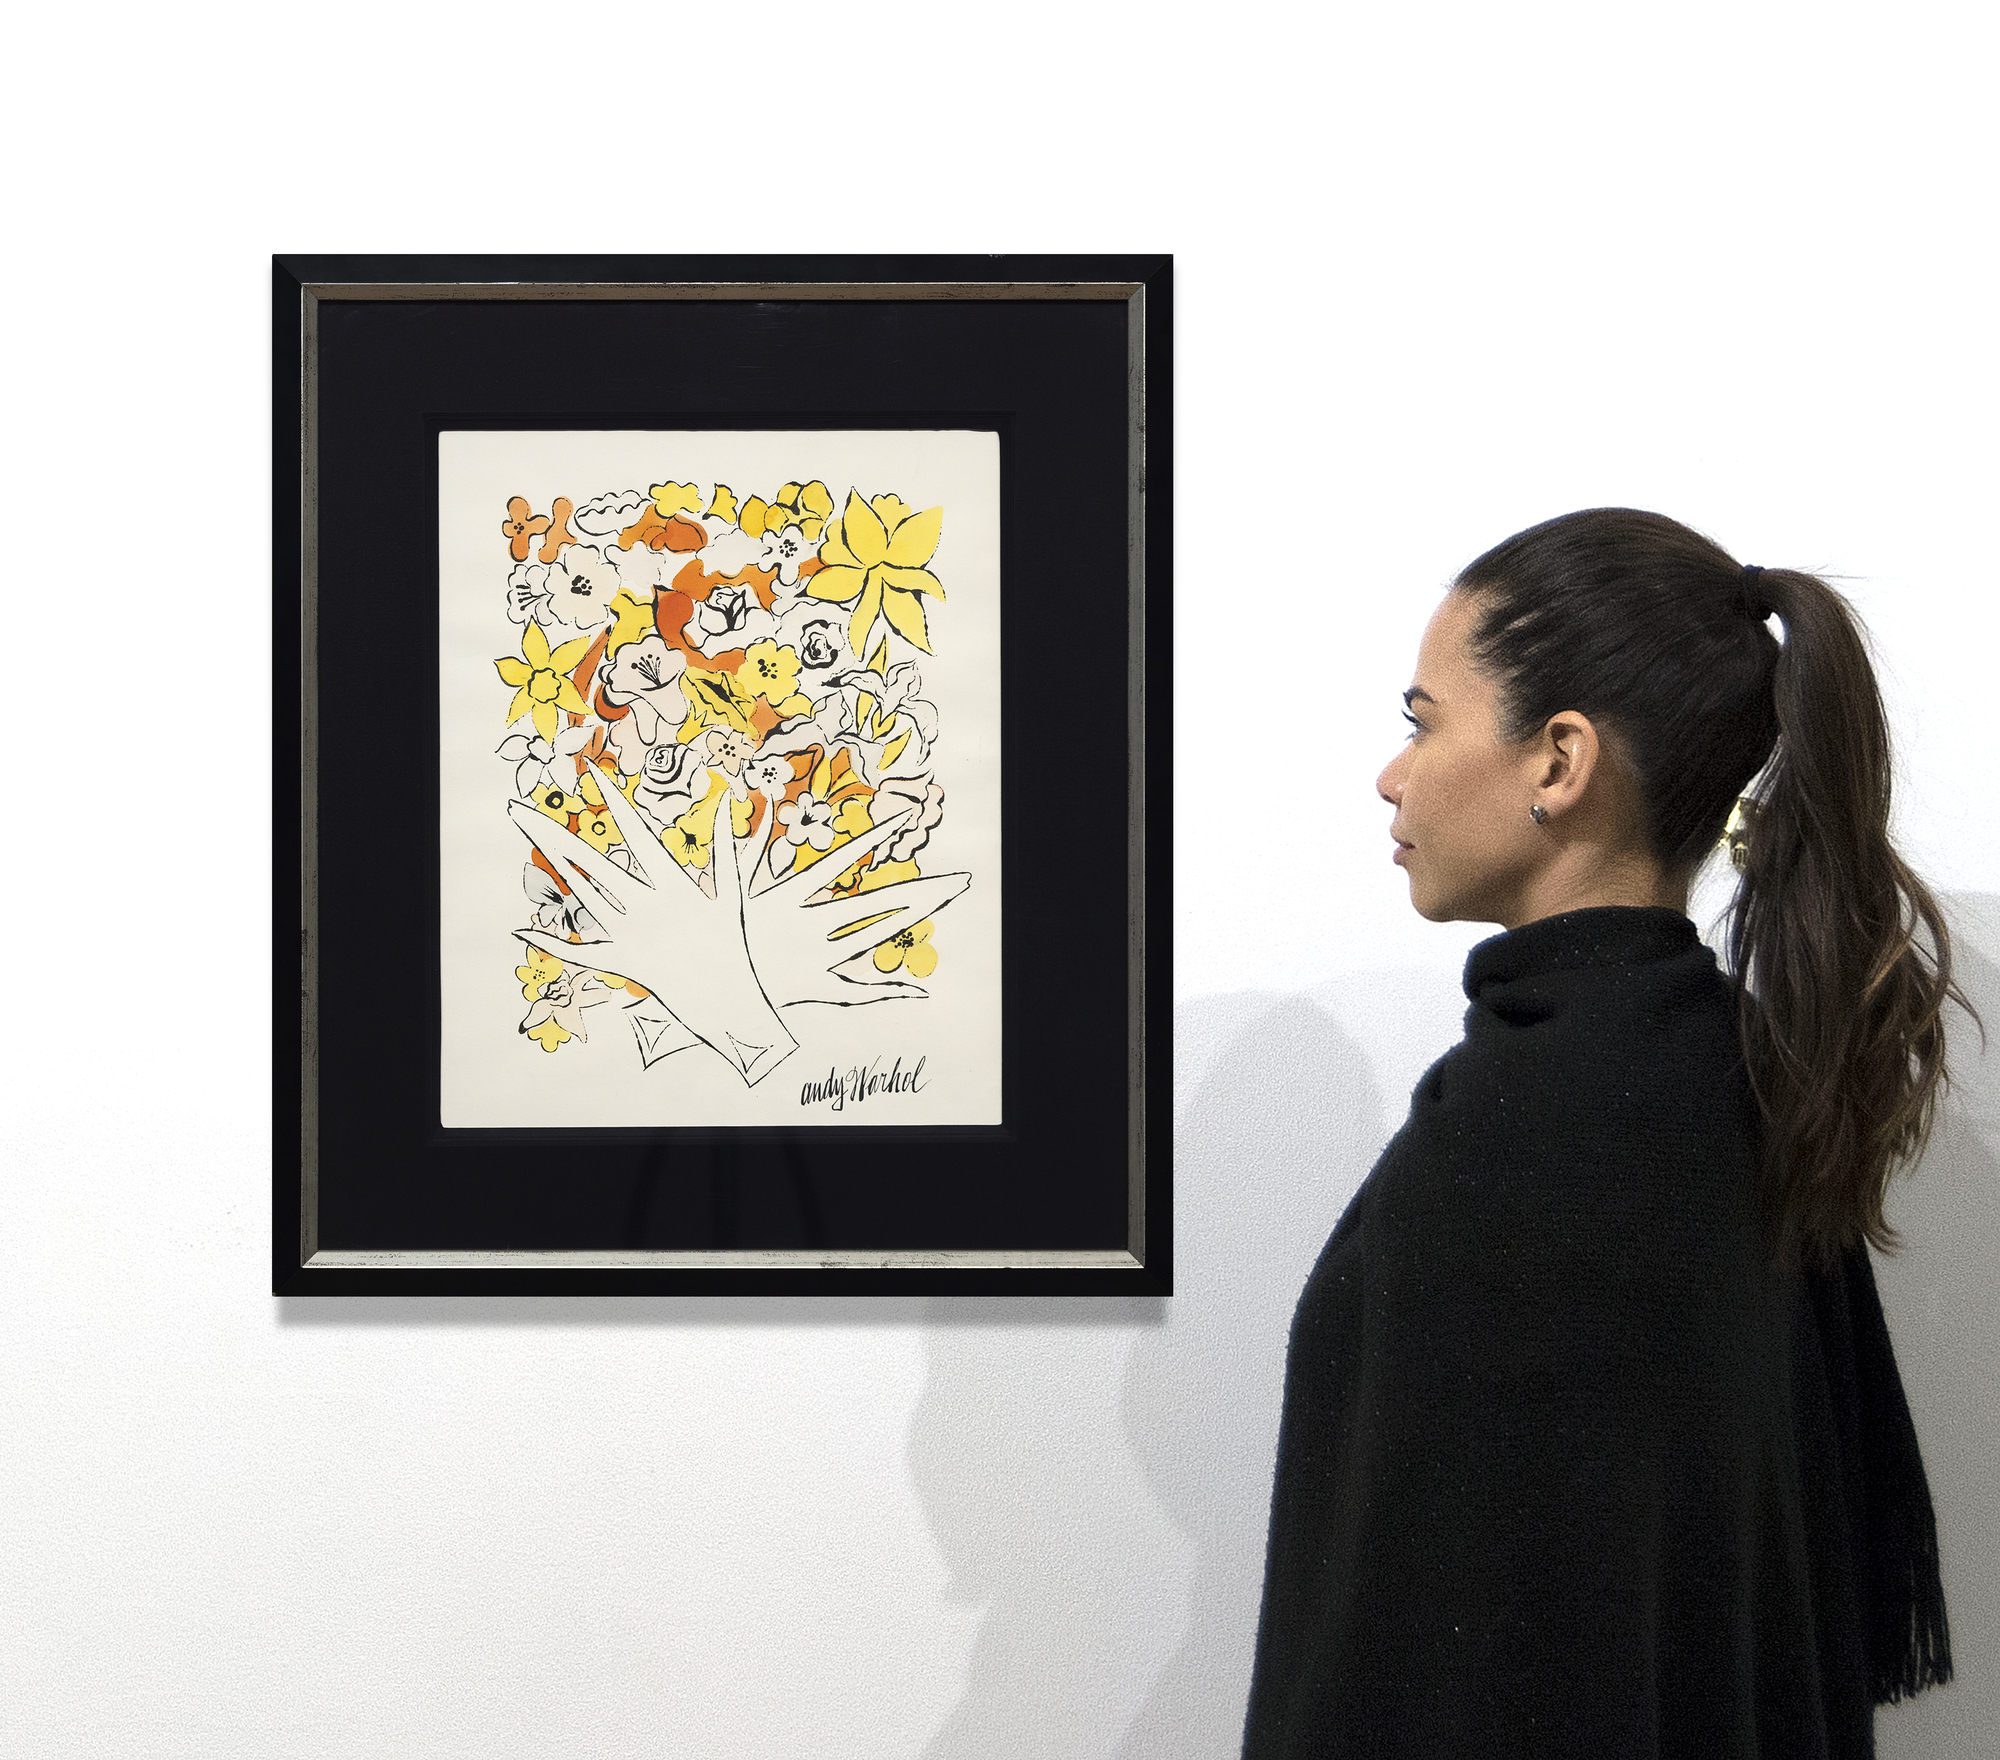 A menudo pasados por alto, los dibujos en tinta y color de Warhol muestran su habilidad para reducir motivos y elementos a su naturaleza esencial utilizando una economía de línea y una maravillosa jovialidad que caracteriza a cada uno de ellos. A menudo nos recuerdan que el arte puede ser el mejor proveedor de humor y capricho si no se complica y fluye libremente. Sin título, Flores es un anticipo de su famoso diseño para Vogue de 1960, que combina dibujos de flores en colores fluorescentes. Anticipa la temprana inclinación de Warhol a separar la línea del color, un recurso que más tarde daría a sus imágenes serigrafiadas su inmediatez abstracta.